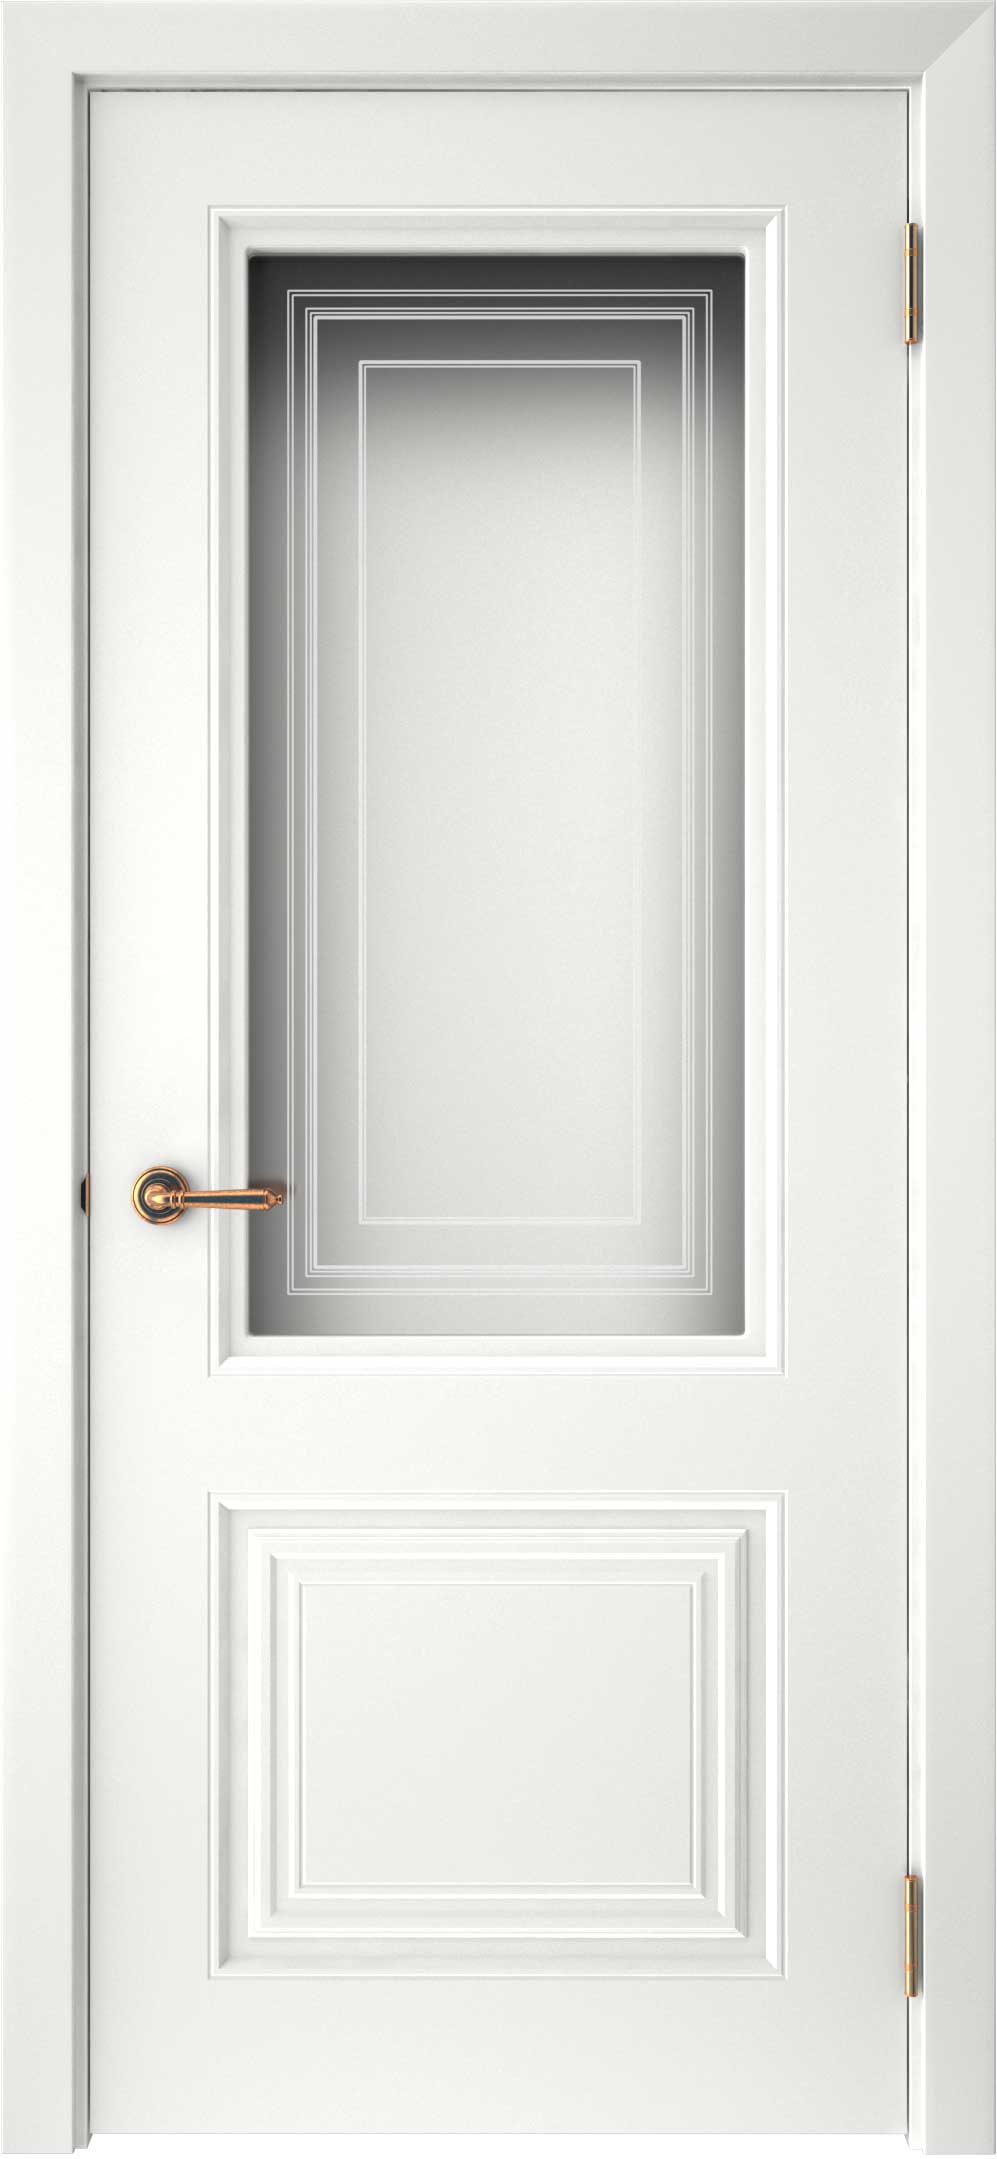 Двери крашеные (Эмаль) ТЕКОНА Смальта-42 со стеклом Белый ral размер 200 х 80 см. артикул F0000093291